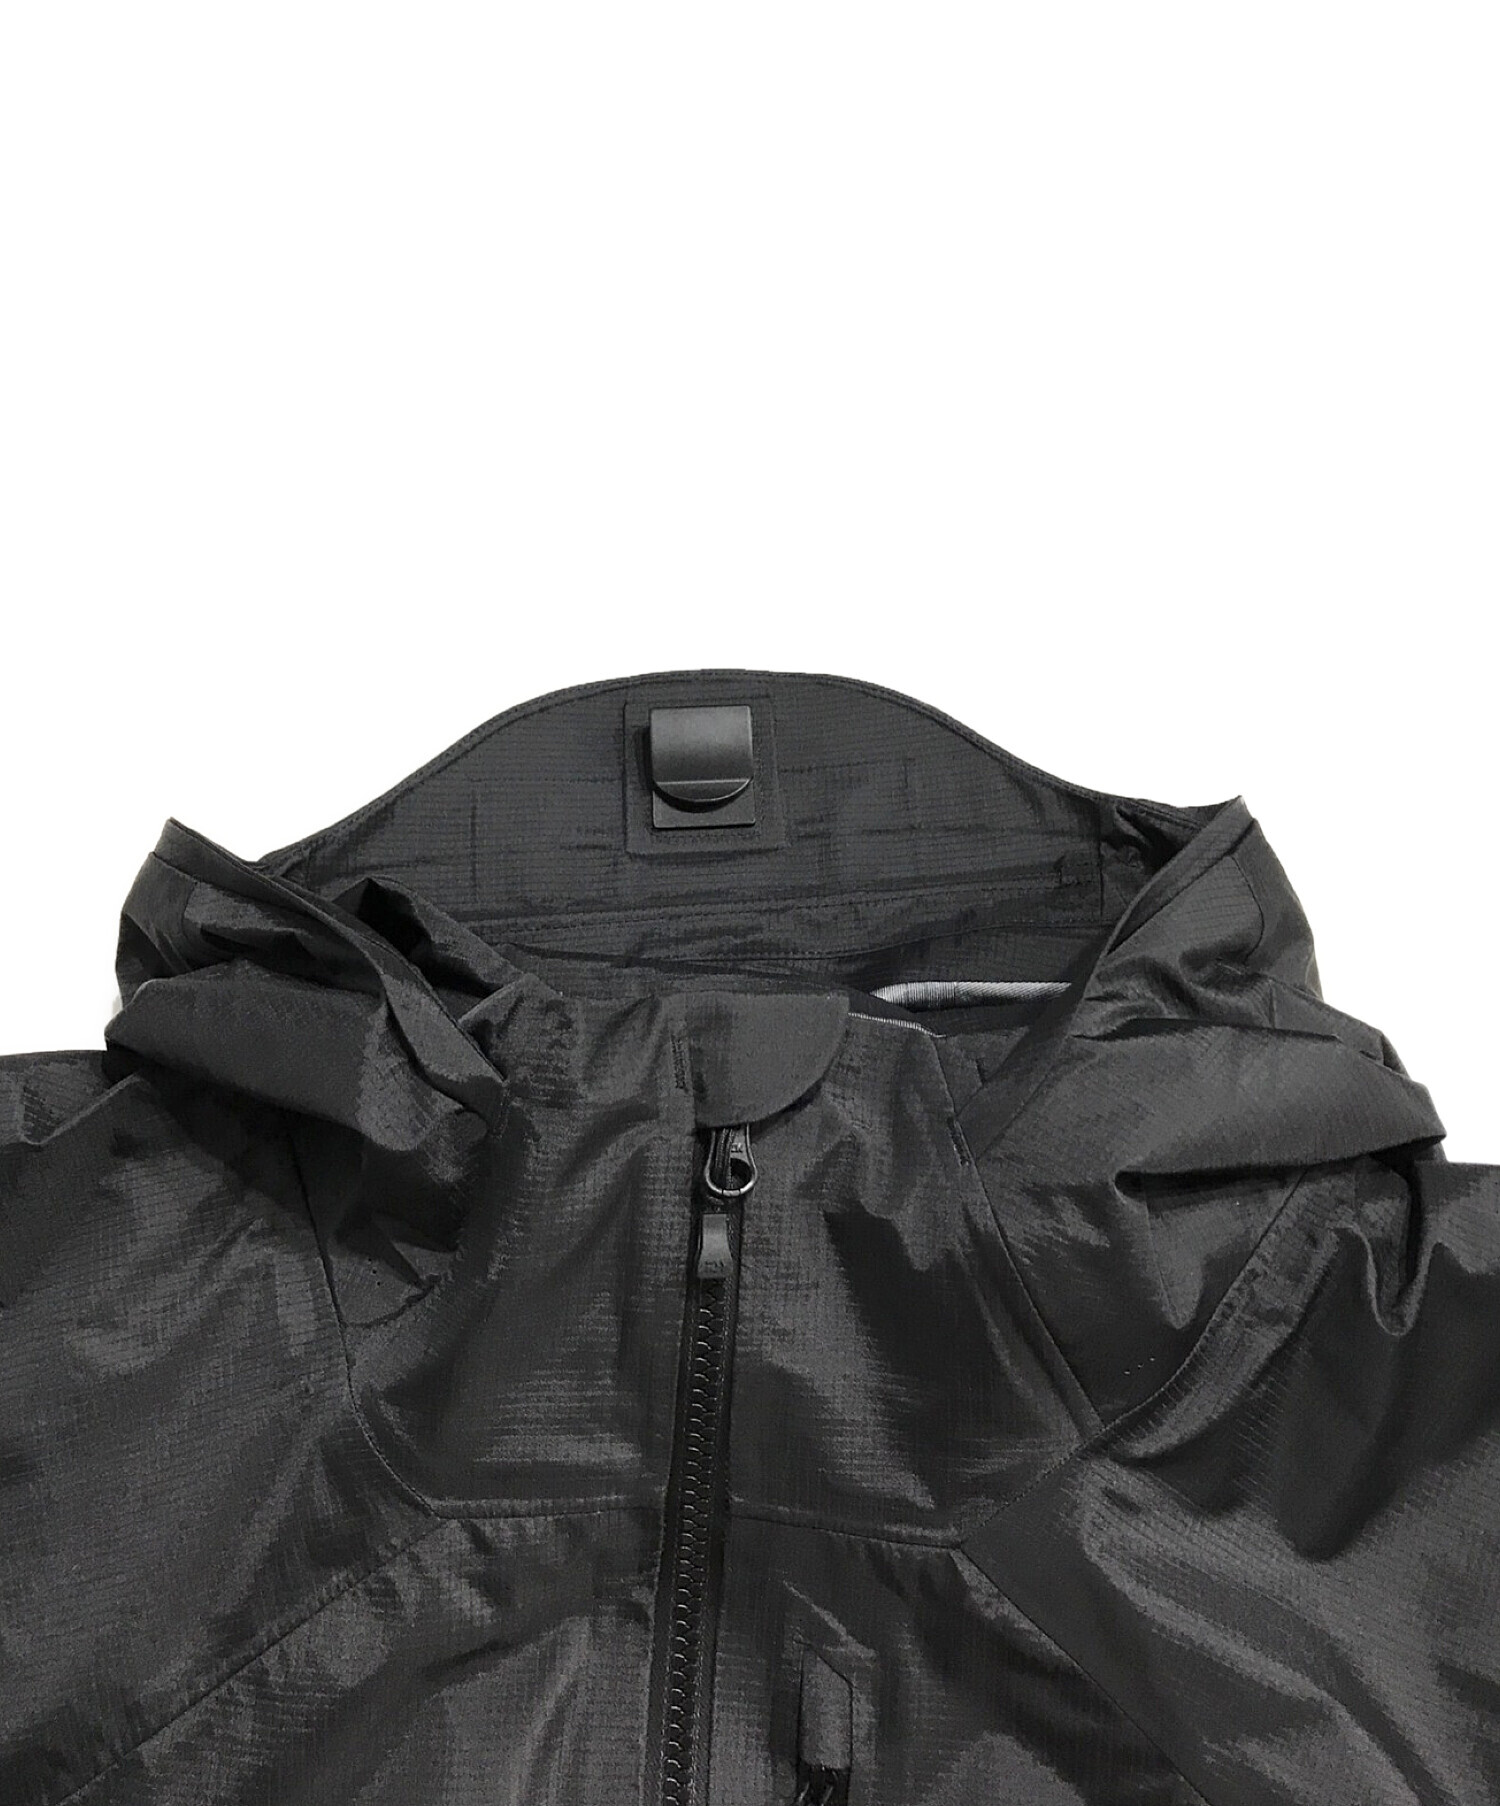 DAIWA (ダイワ) ゴアテックスフォグラージャケット ブラック サイズ:L